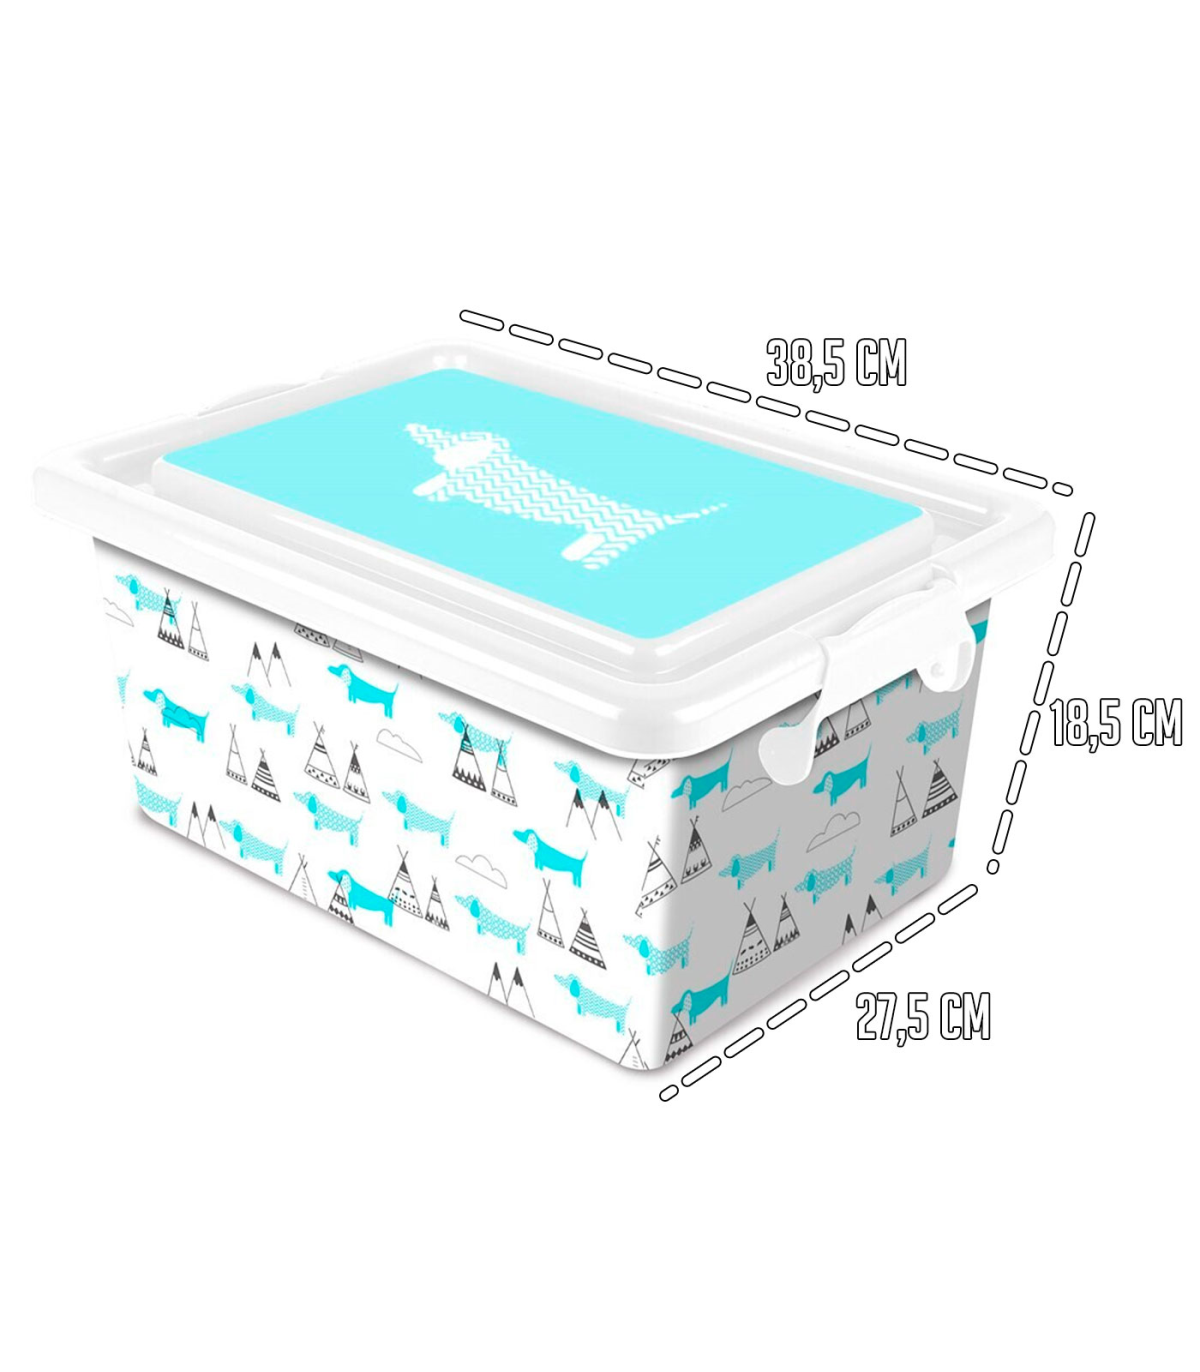 Tradineur – Caja de almacenamiento – Diseño perro – capacidad de 13 litros – fabricado en España - Contenedor para almacenar juguetes, libros, ropa